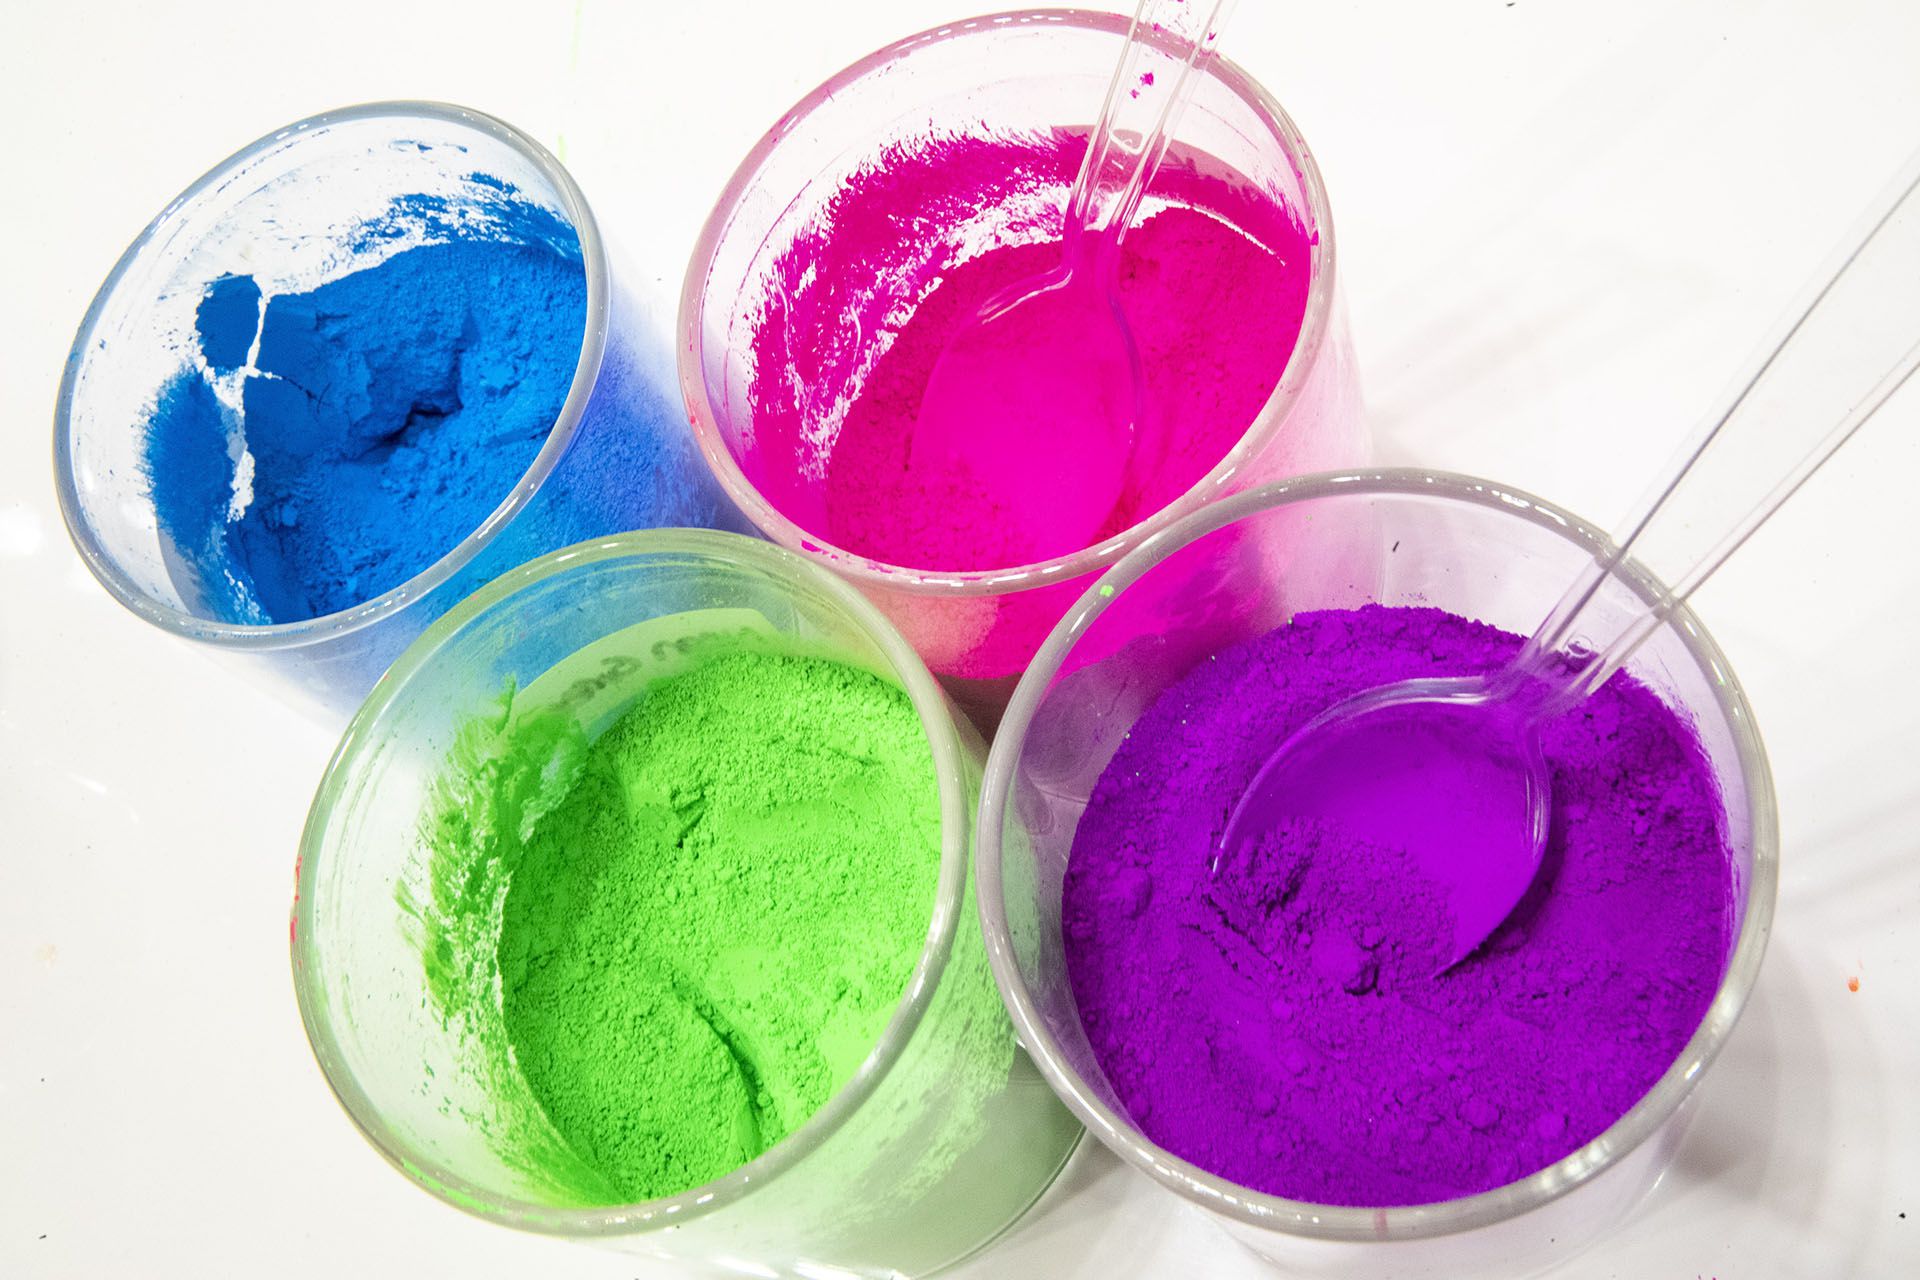 Los polvos colorantes para darle color al slime a gusto del cliente (AP Photo/Mary Altaffer)